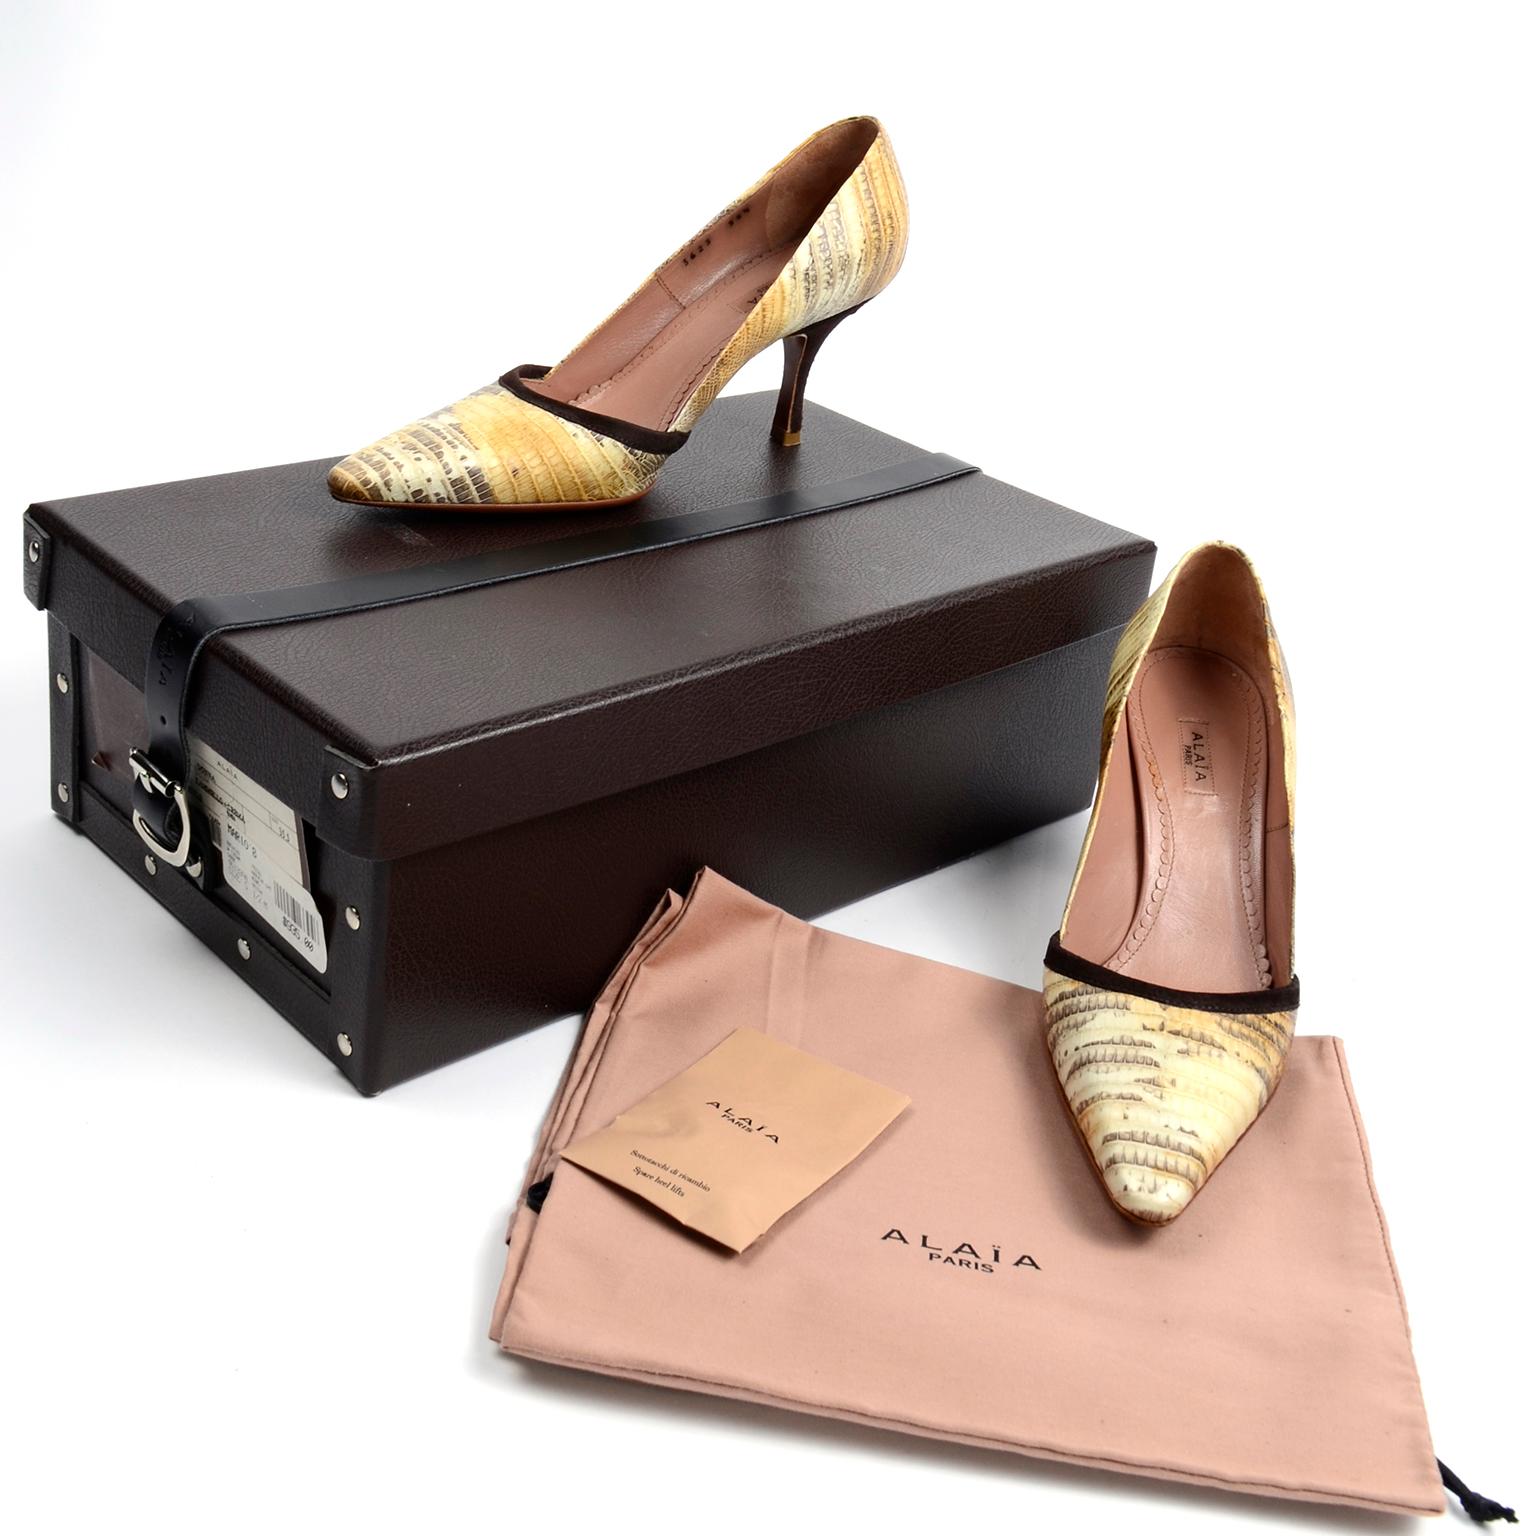 Diese Alaïa Schlangenleder-Pumps sind in einer schönen Cremefarbe mit braunen Wildlederabsätzen und -besätzen. Die Modellnummer für diese Schuhe ist: AAP434-6PT Tejus 80mm Pumpe. Diese Schuhe kommen in Originalverpackung, die aus Leder mit einer